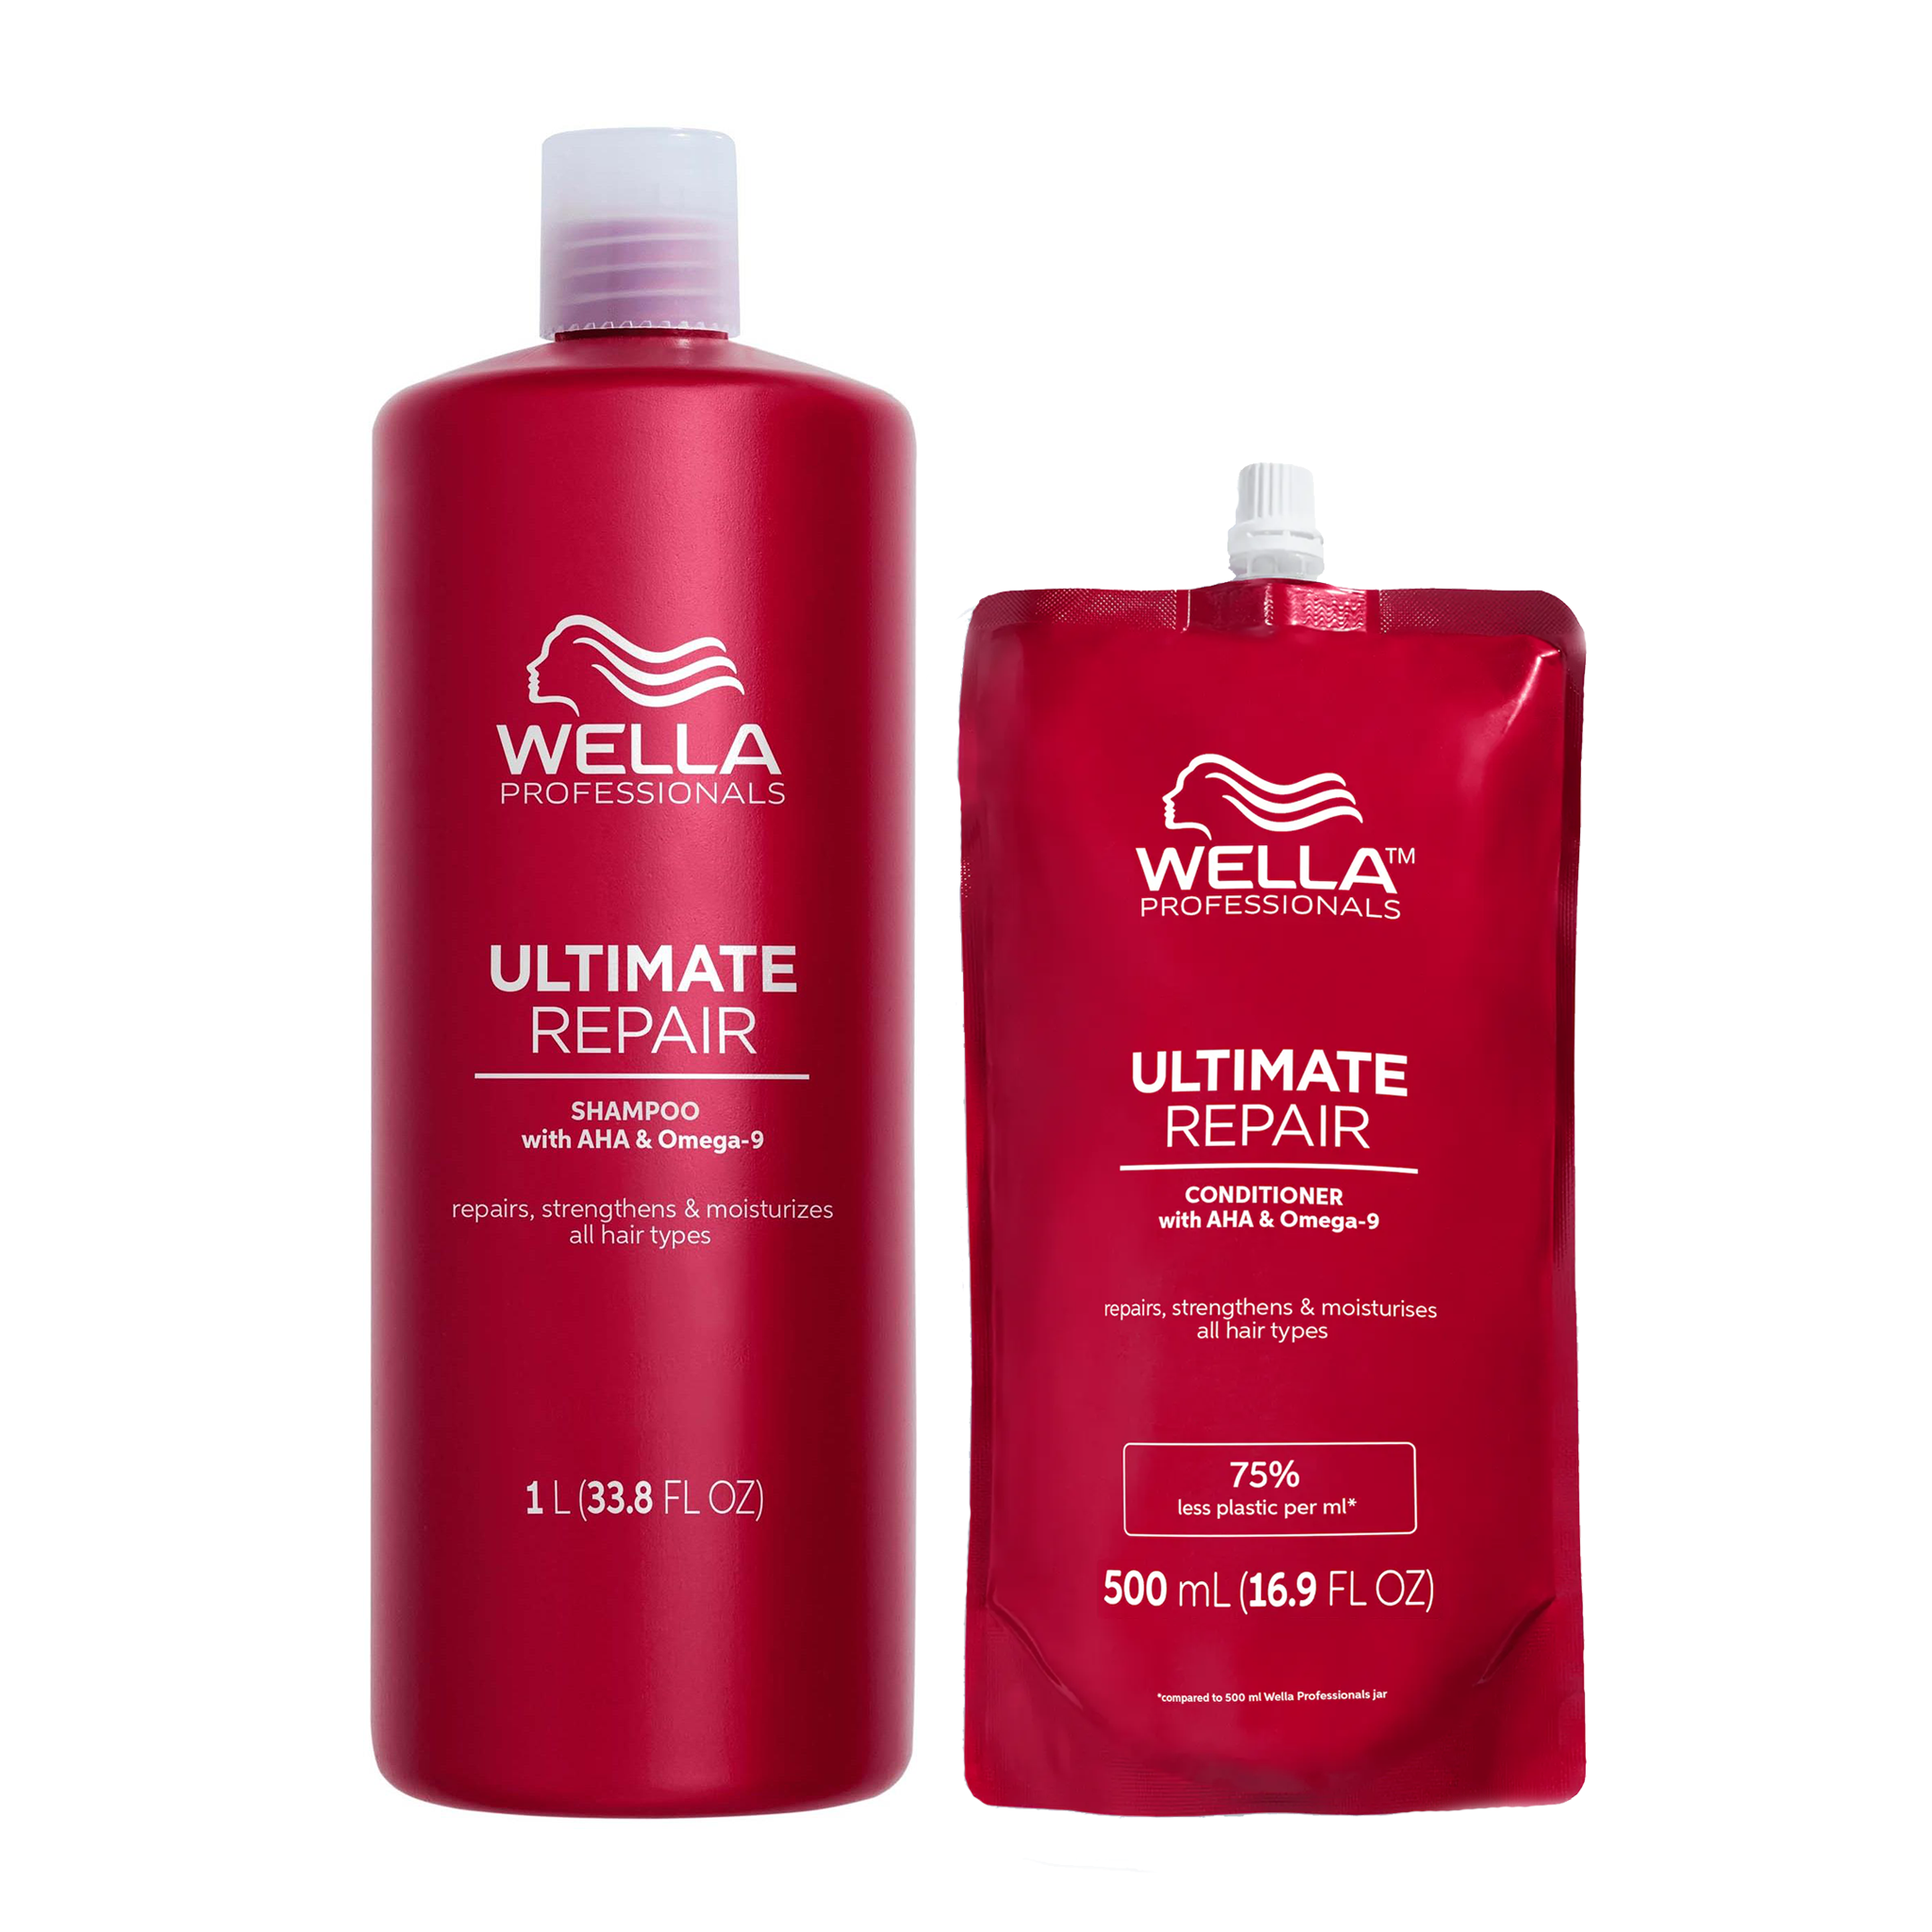 Wella Ultimate Repair Shampoo 1 Litre & Conditioner 500ml Duo